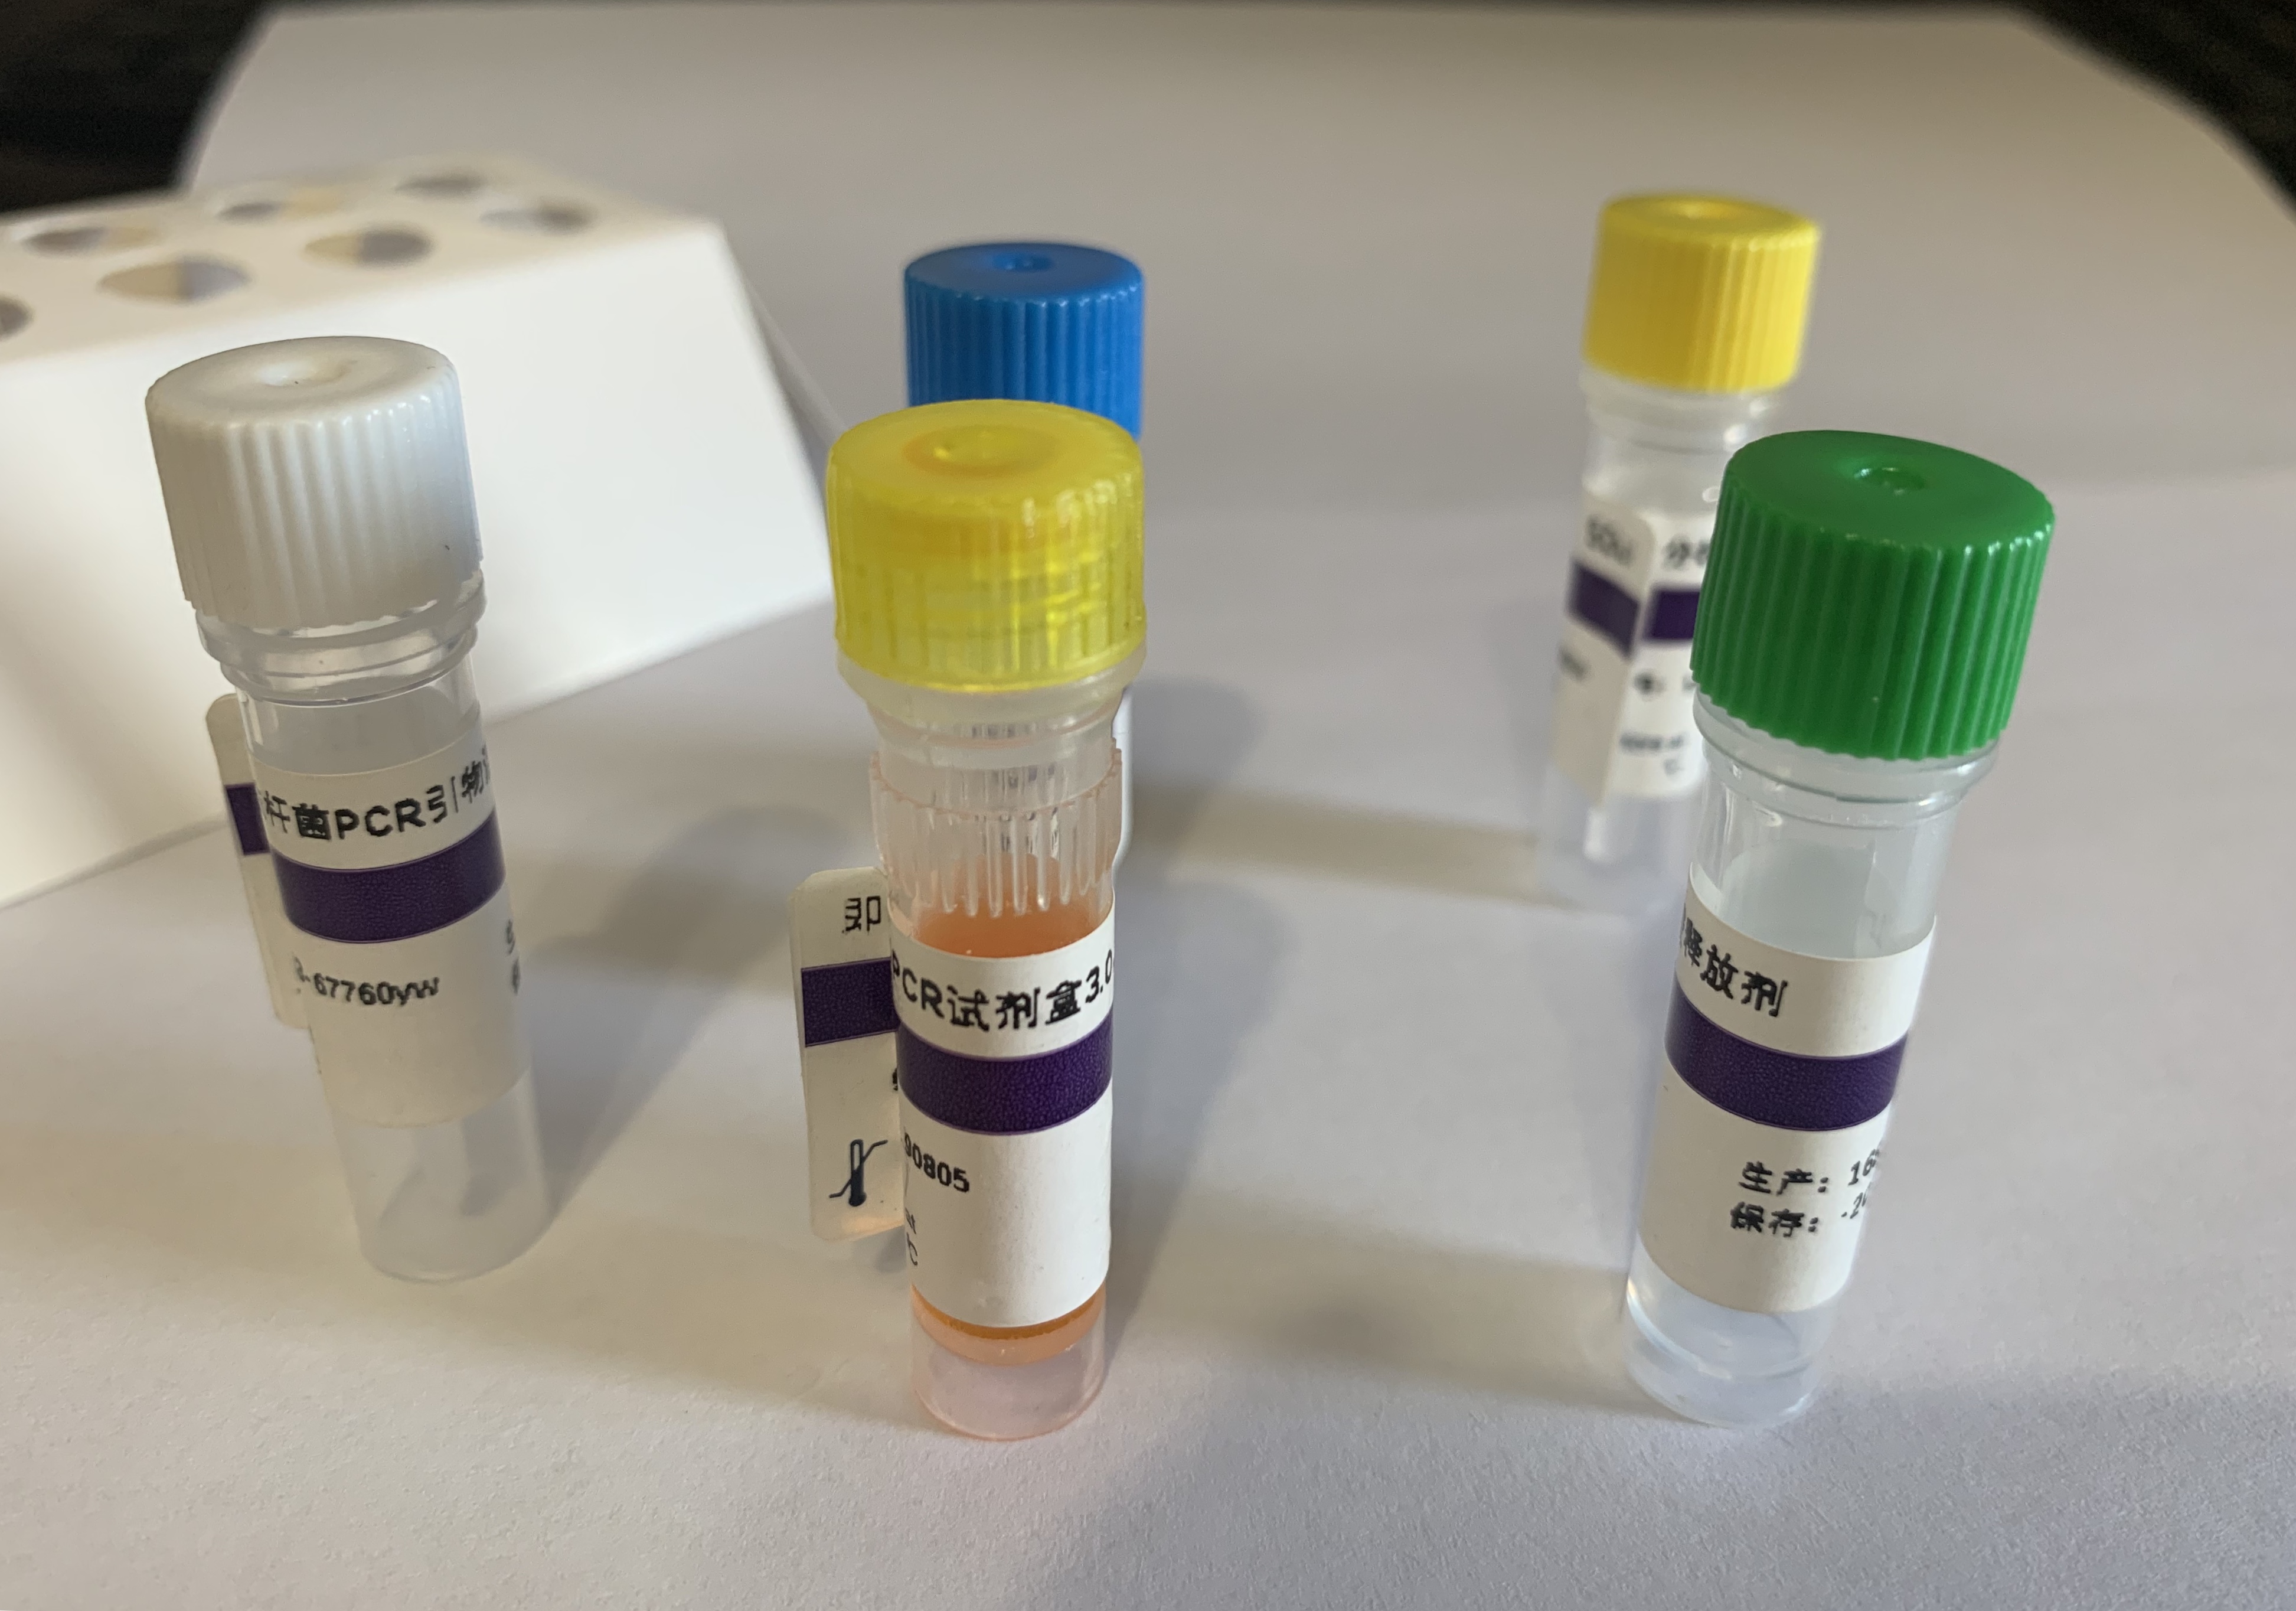 皮炎外瓶霉PCR试剂盒